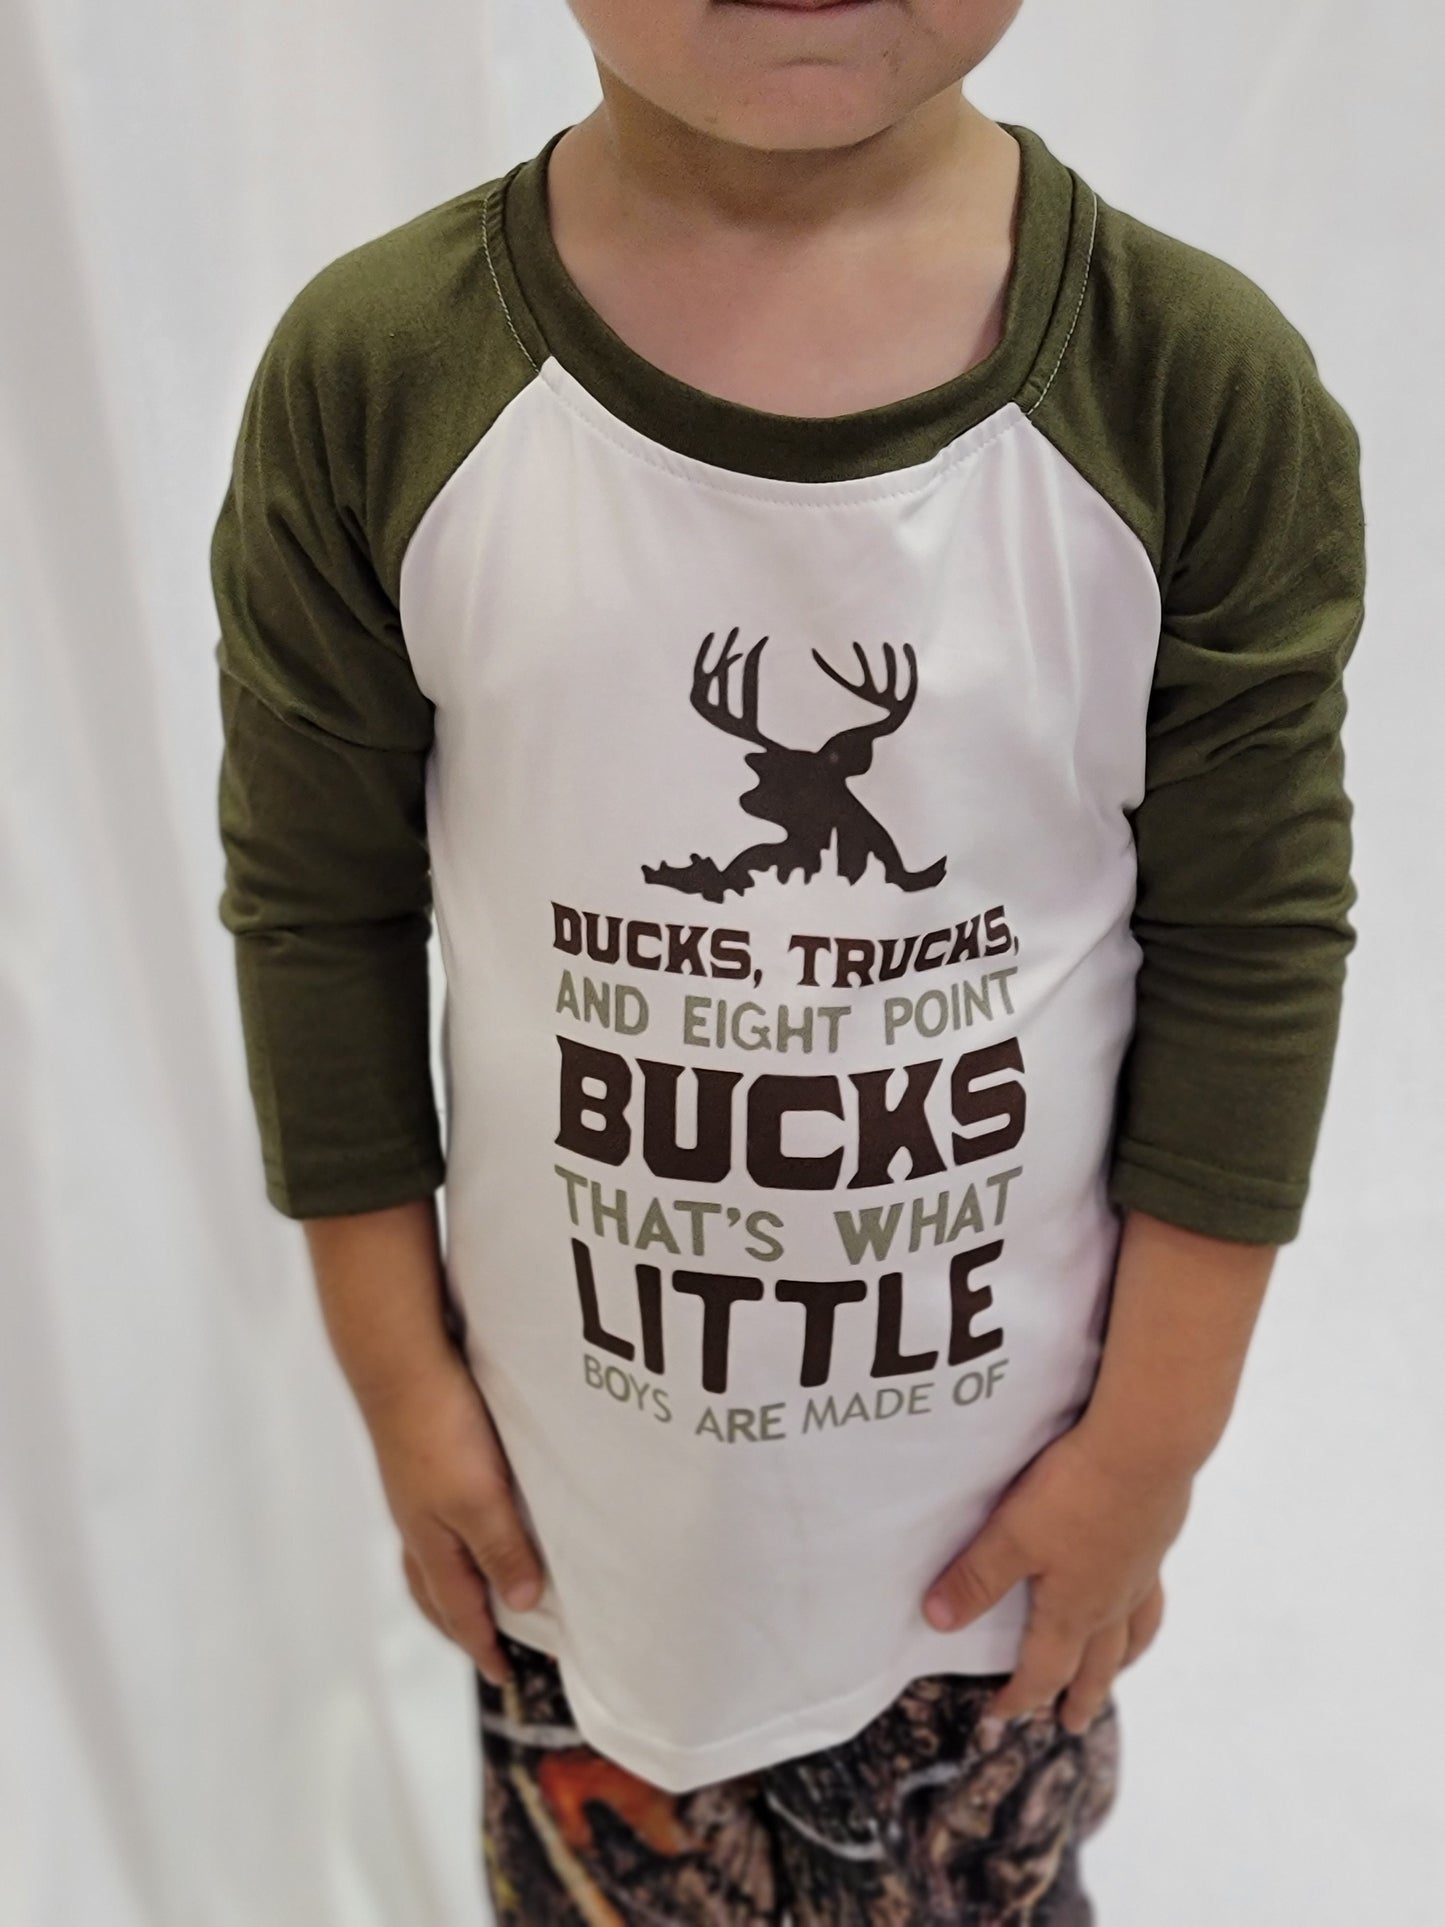 Ducks, Bucks, and Trucks